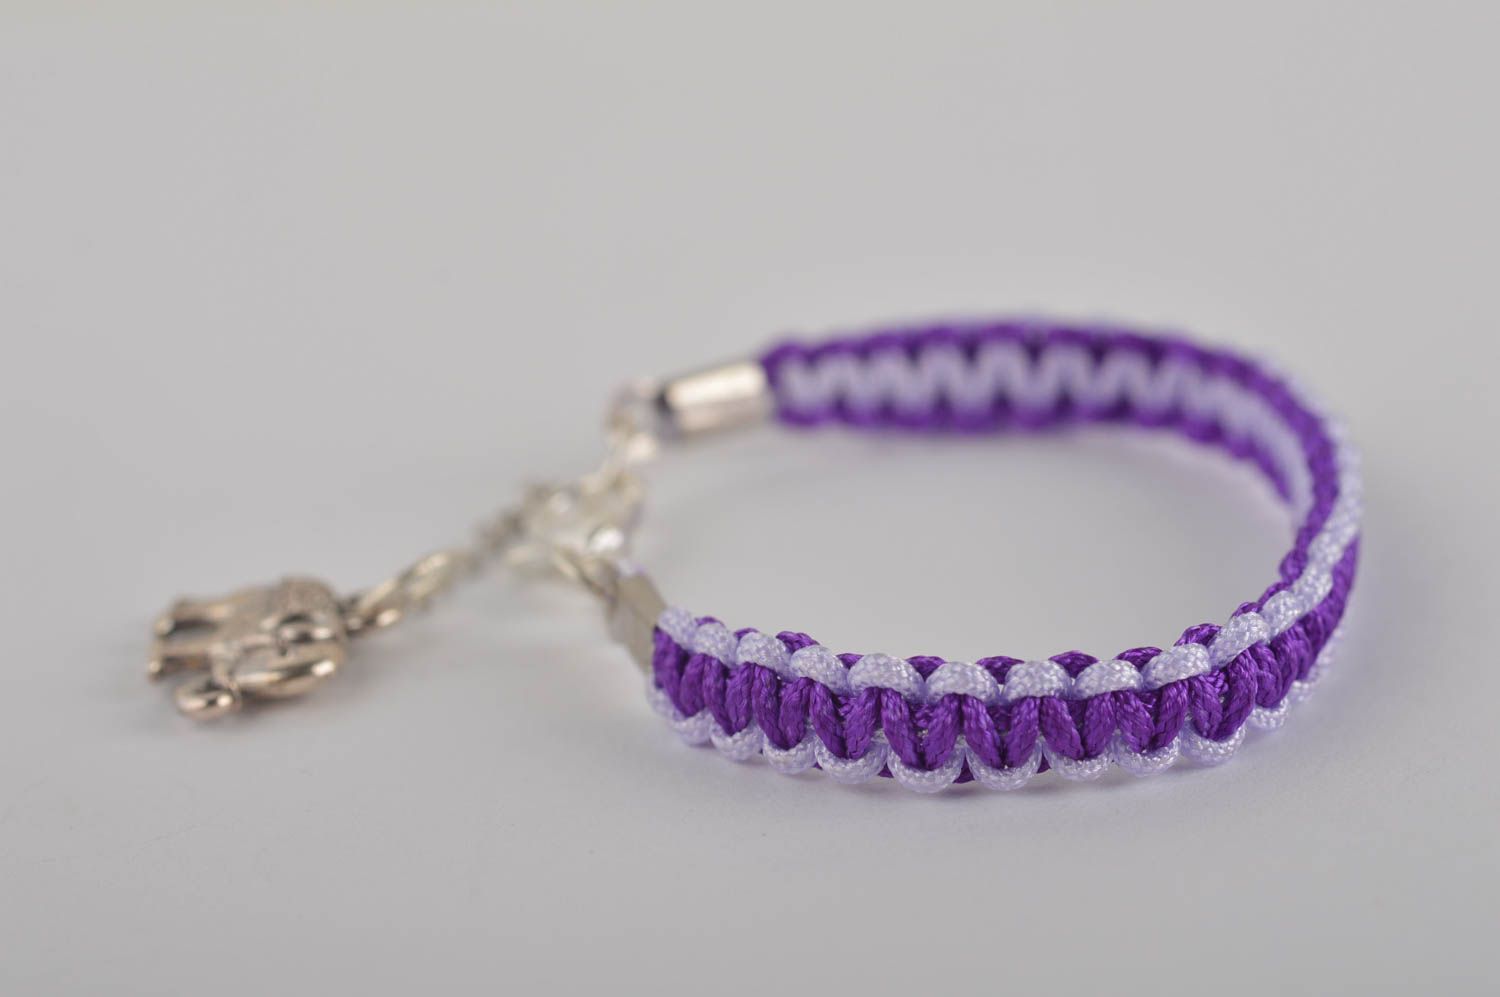 Handmade Textil Armband in Violett Designer Schmuck Accessoire für Mädchen foto 5